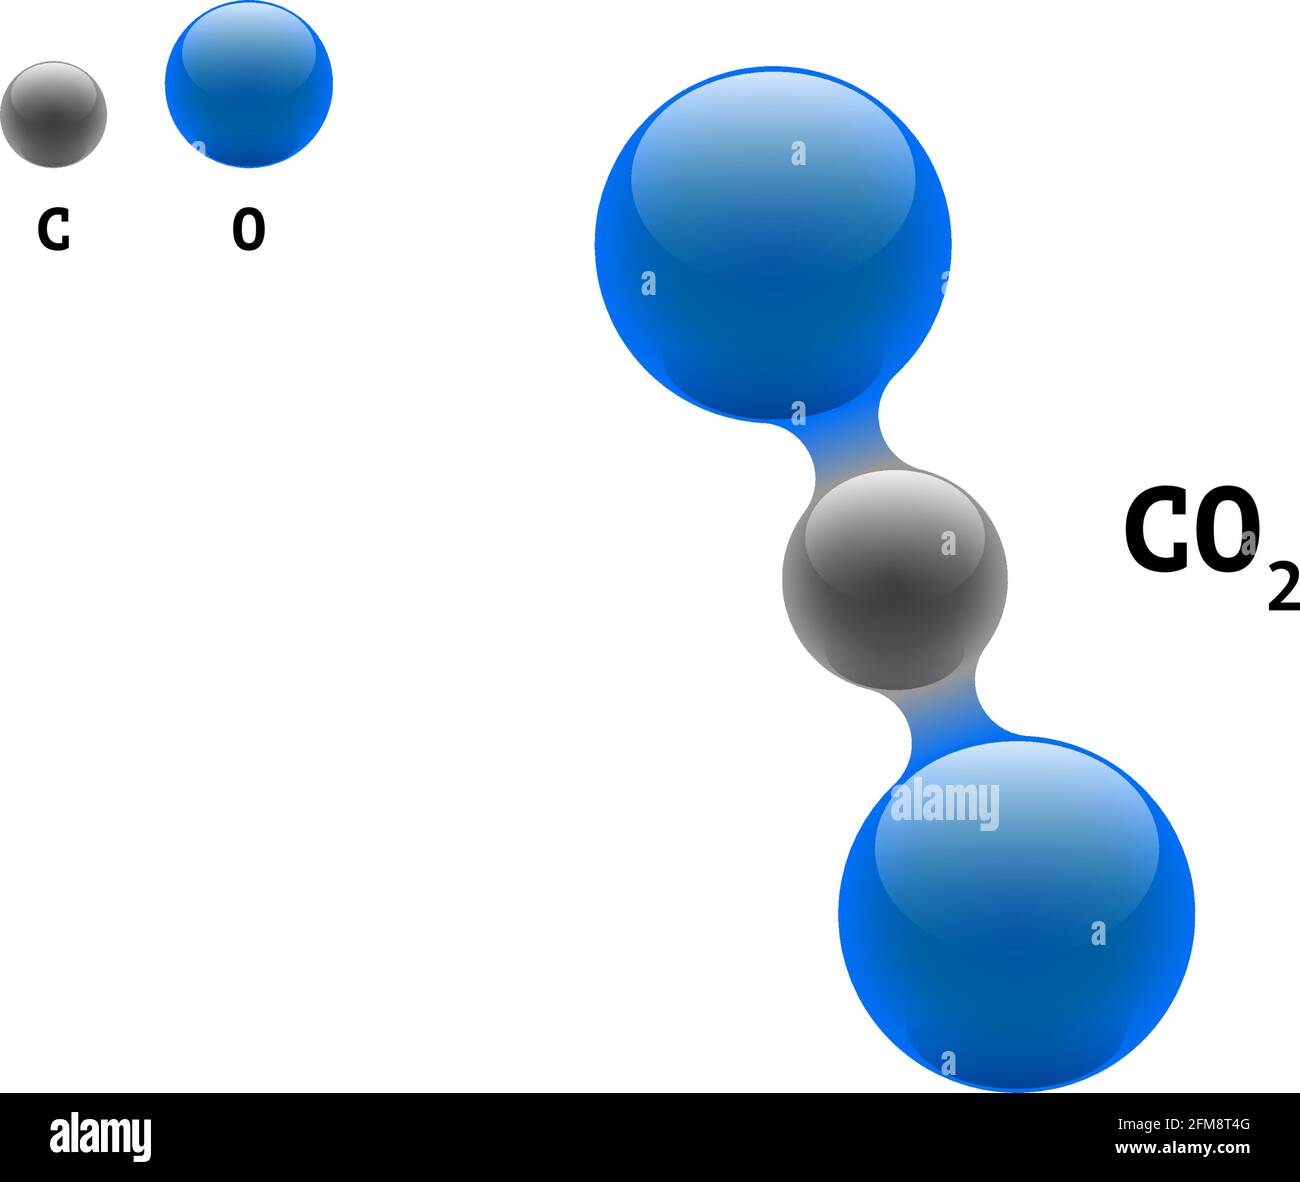 Modèle de chimie molécule dioxyde de carbone CO2 formule d'éléments scientifiques.Particules intégrées structure moléculaire inorganique naturelle 3D composée.Deux atomes de volume d'oxygène et de carbone eps des sphères vectorielles Illustration de Vecteur